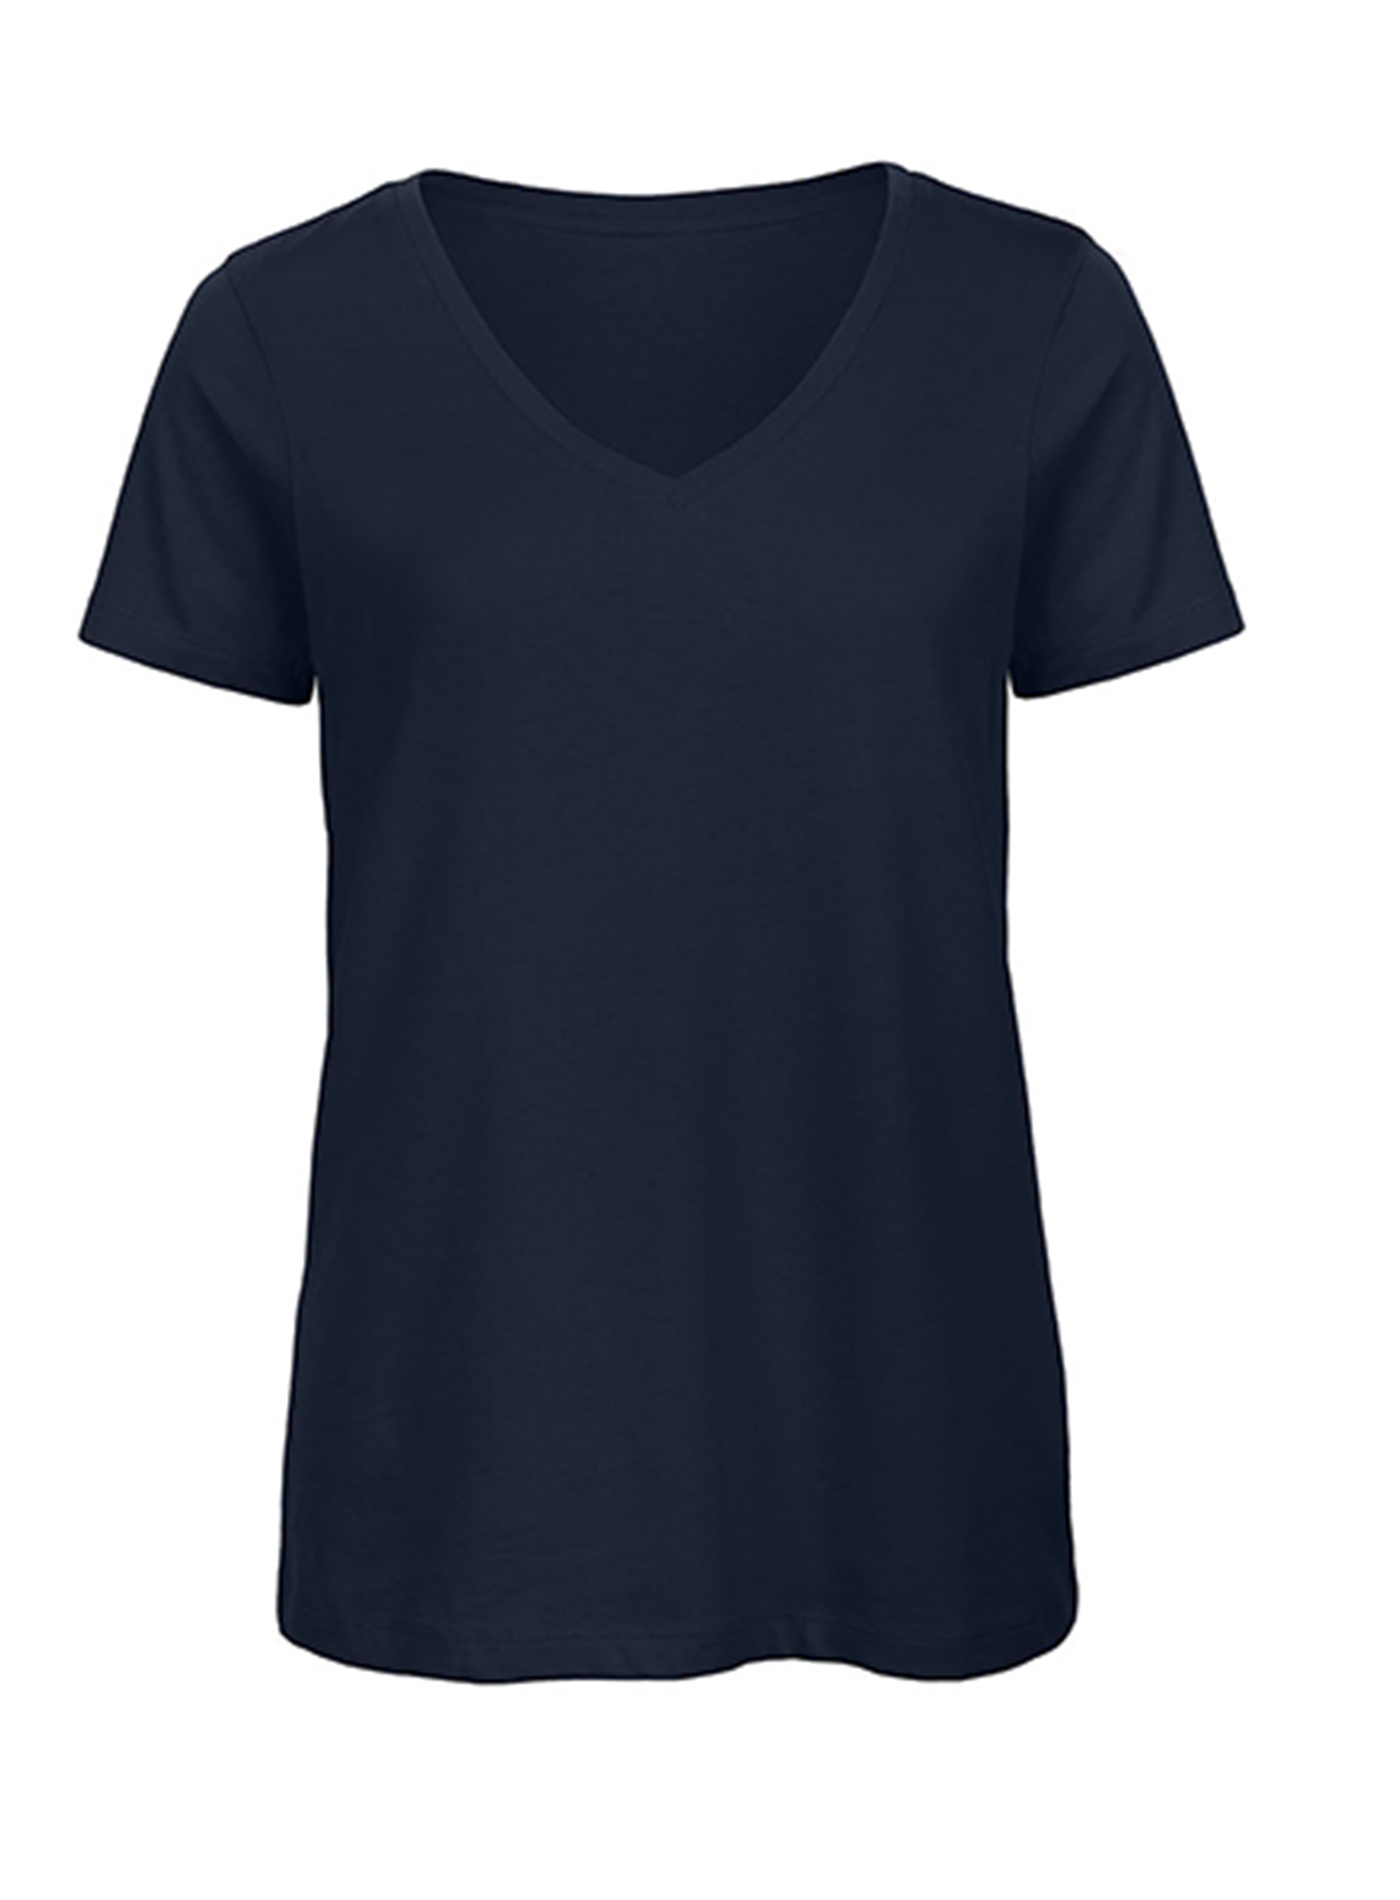 Dámské tričko s výstřihem do V B&C Collection Inspire - Námořnická modrá L